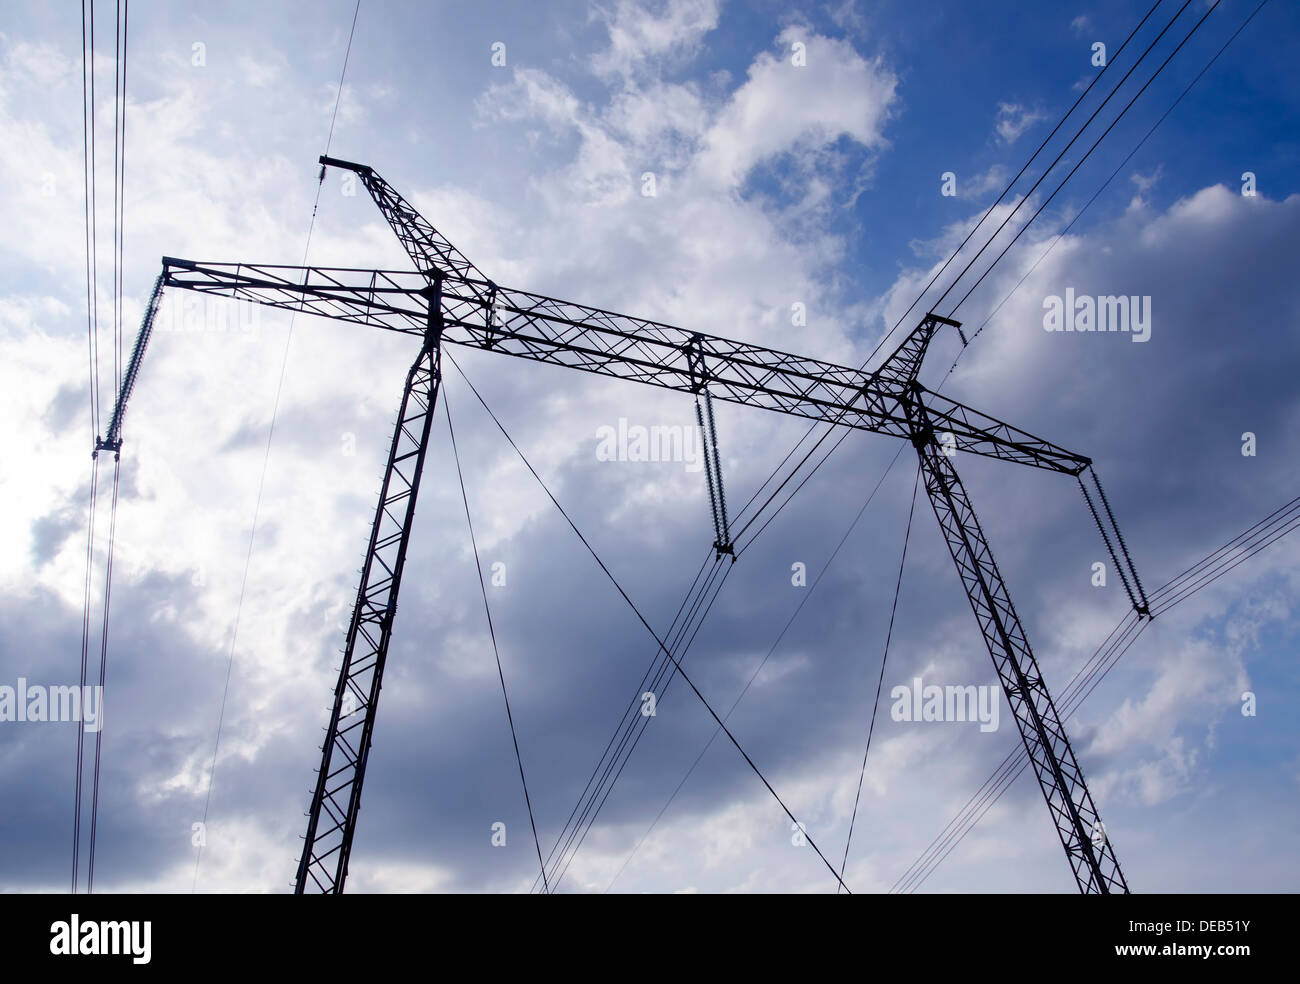 La torre della linea ad alta tensione sull'azzurro del cielo senza nuvole sullo sfondo Foto Stock